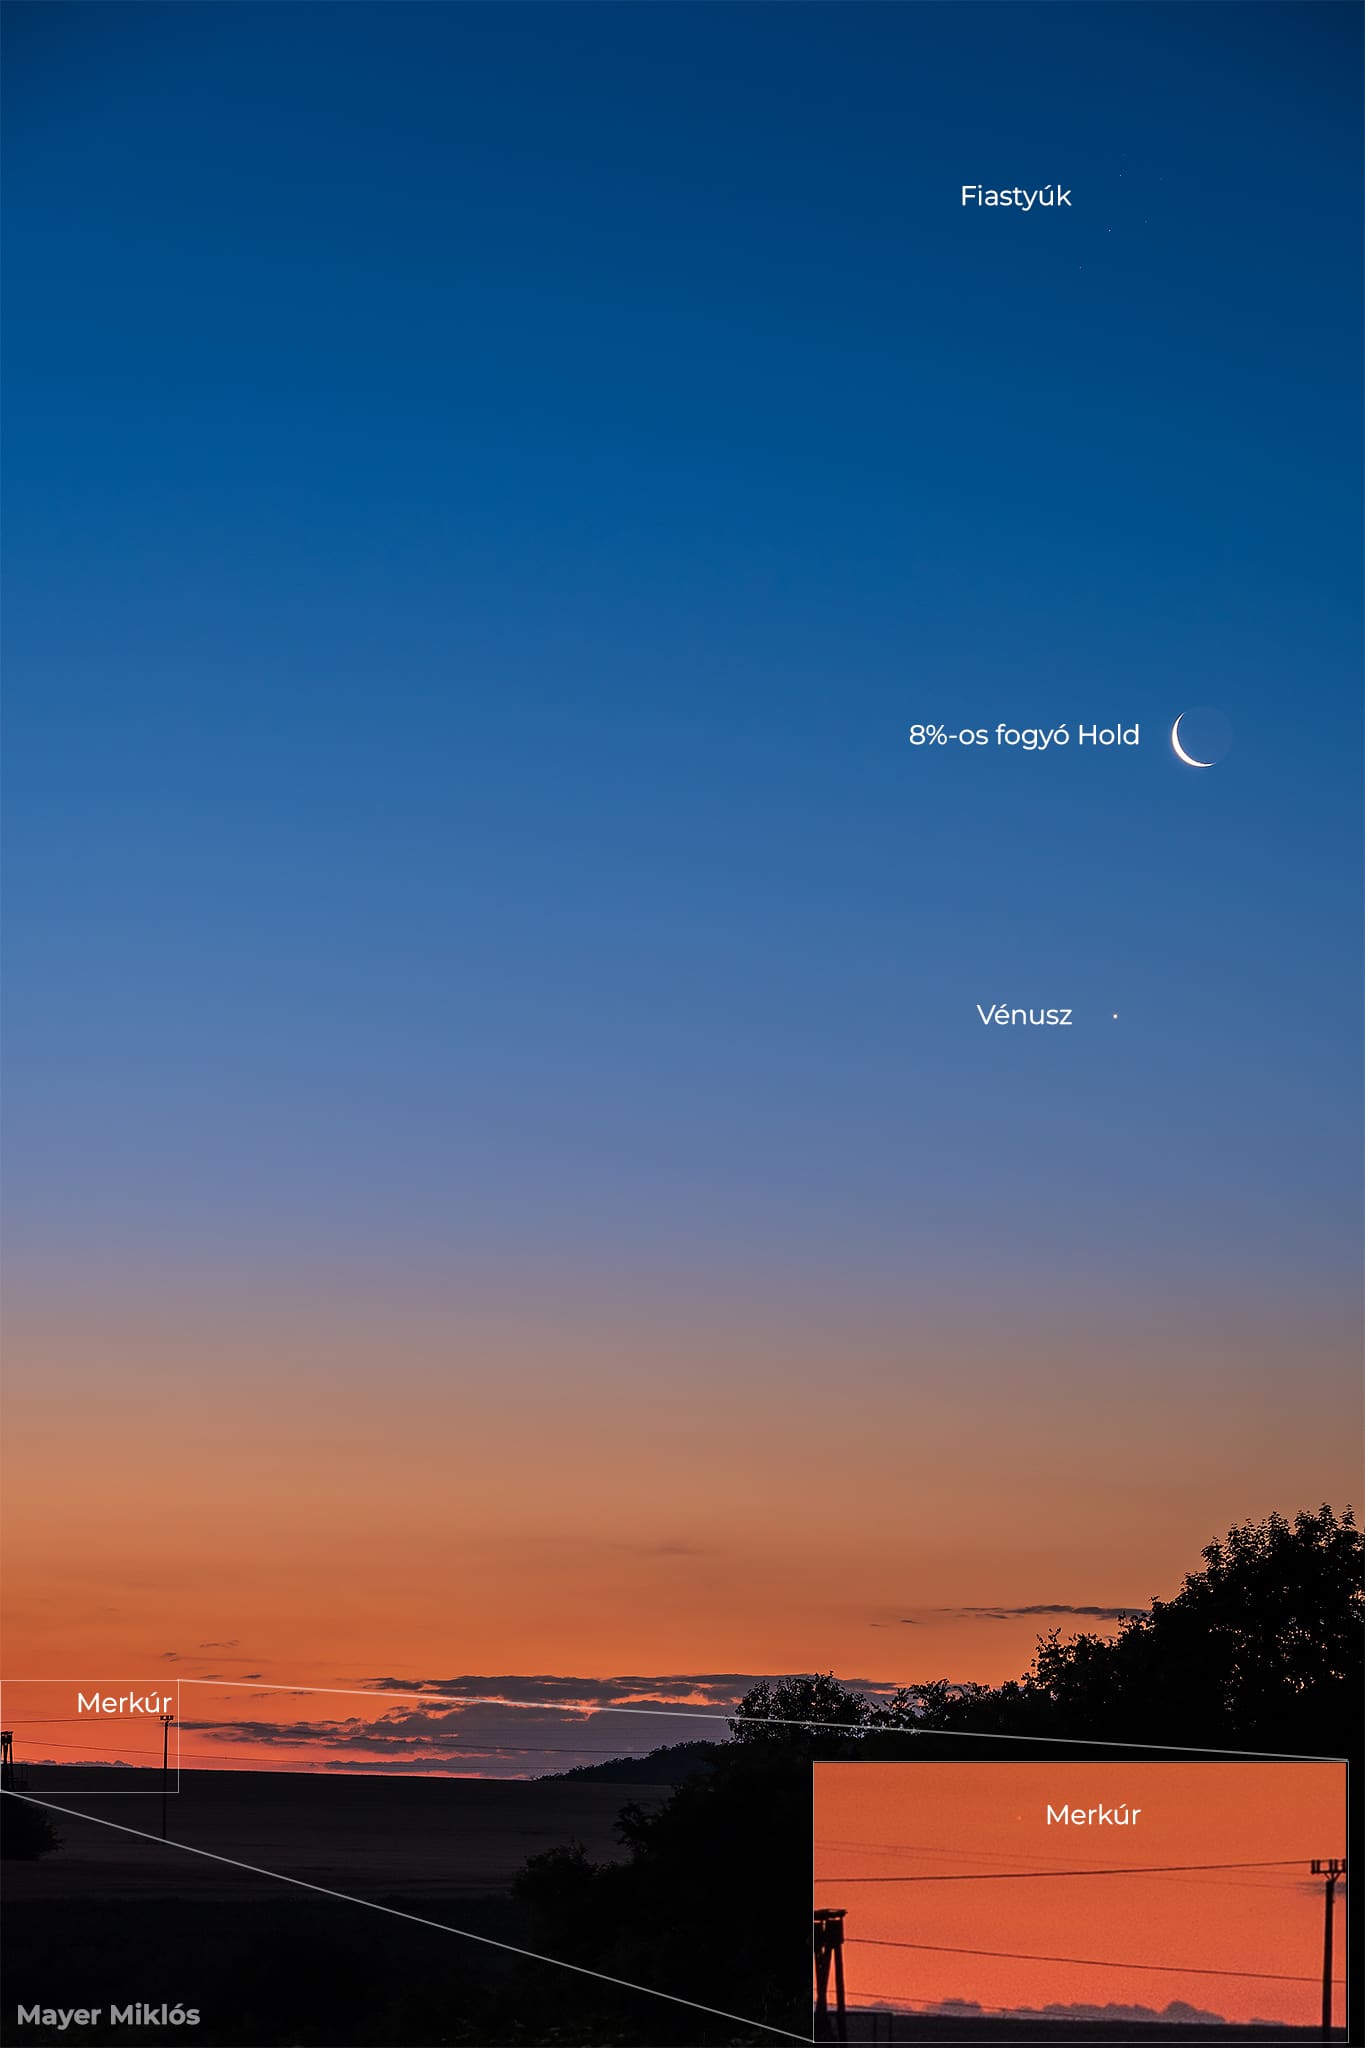 Merkúr Vénusz holdsarló fiastyúk együttállás a hajnali égen